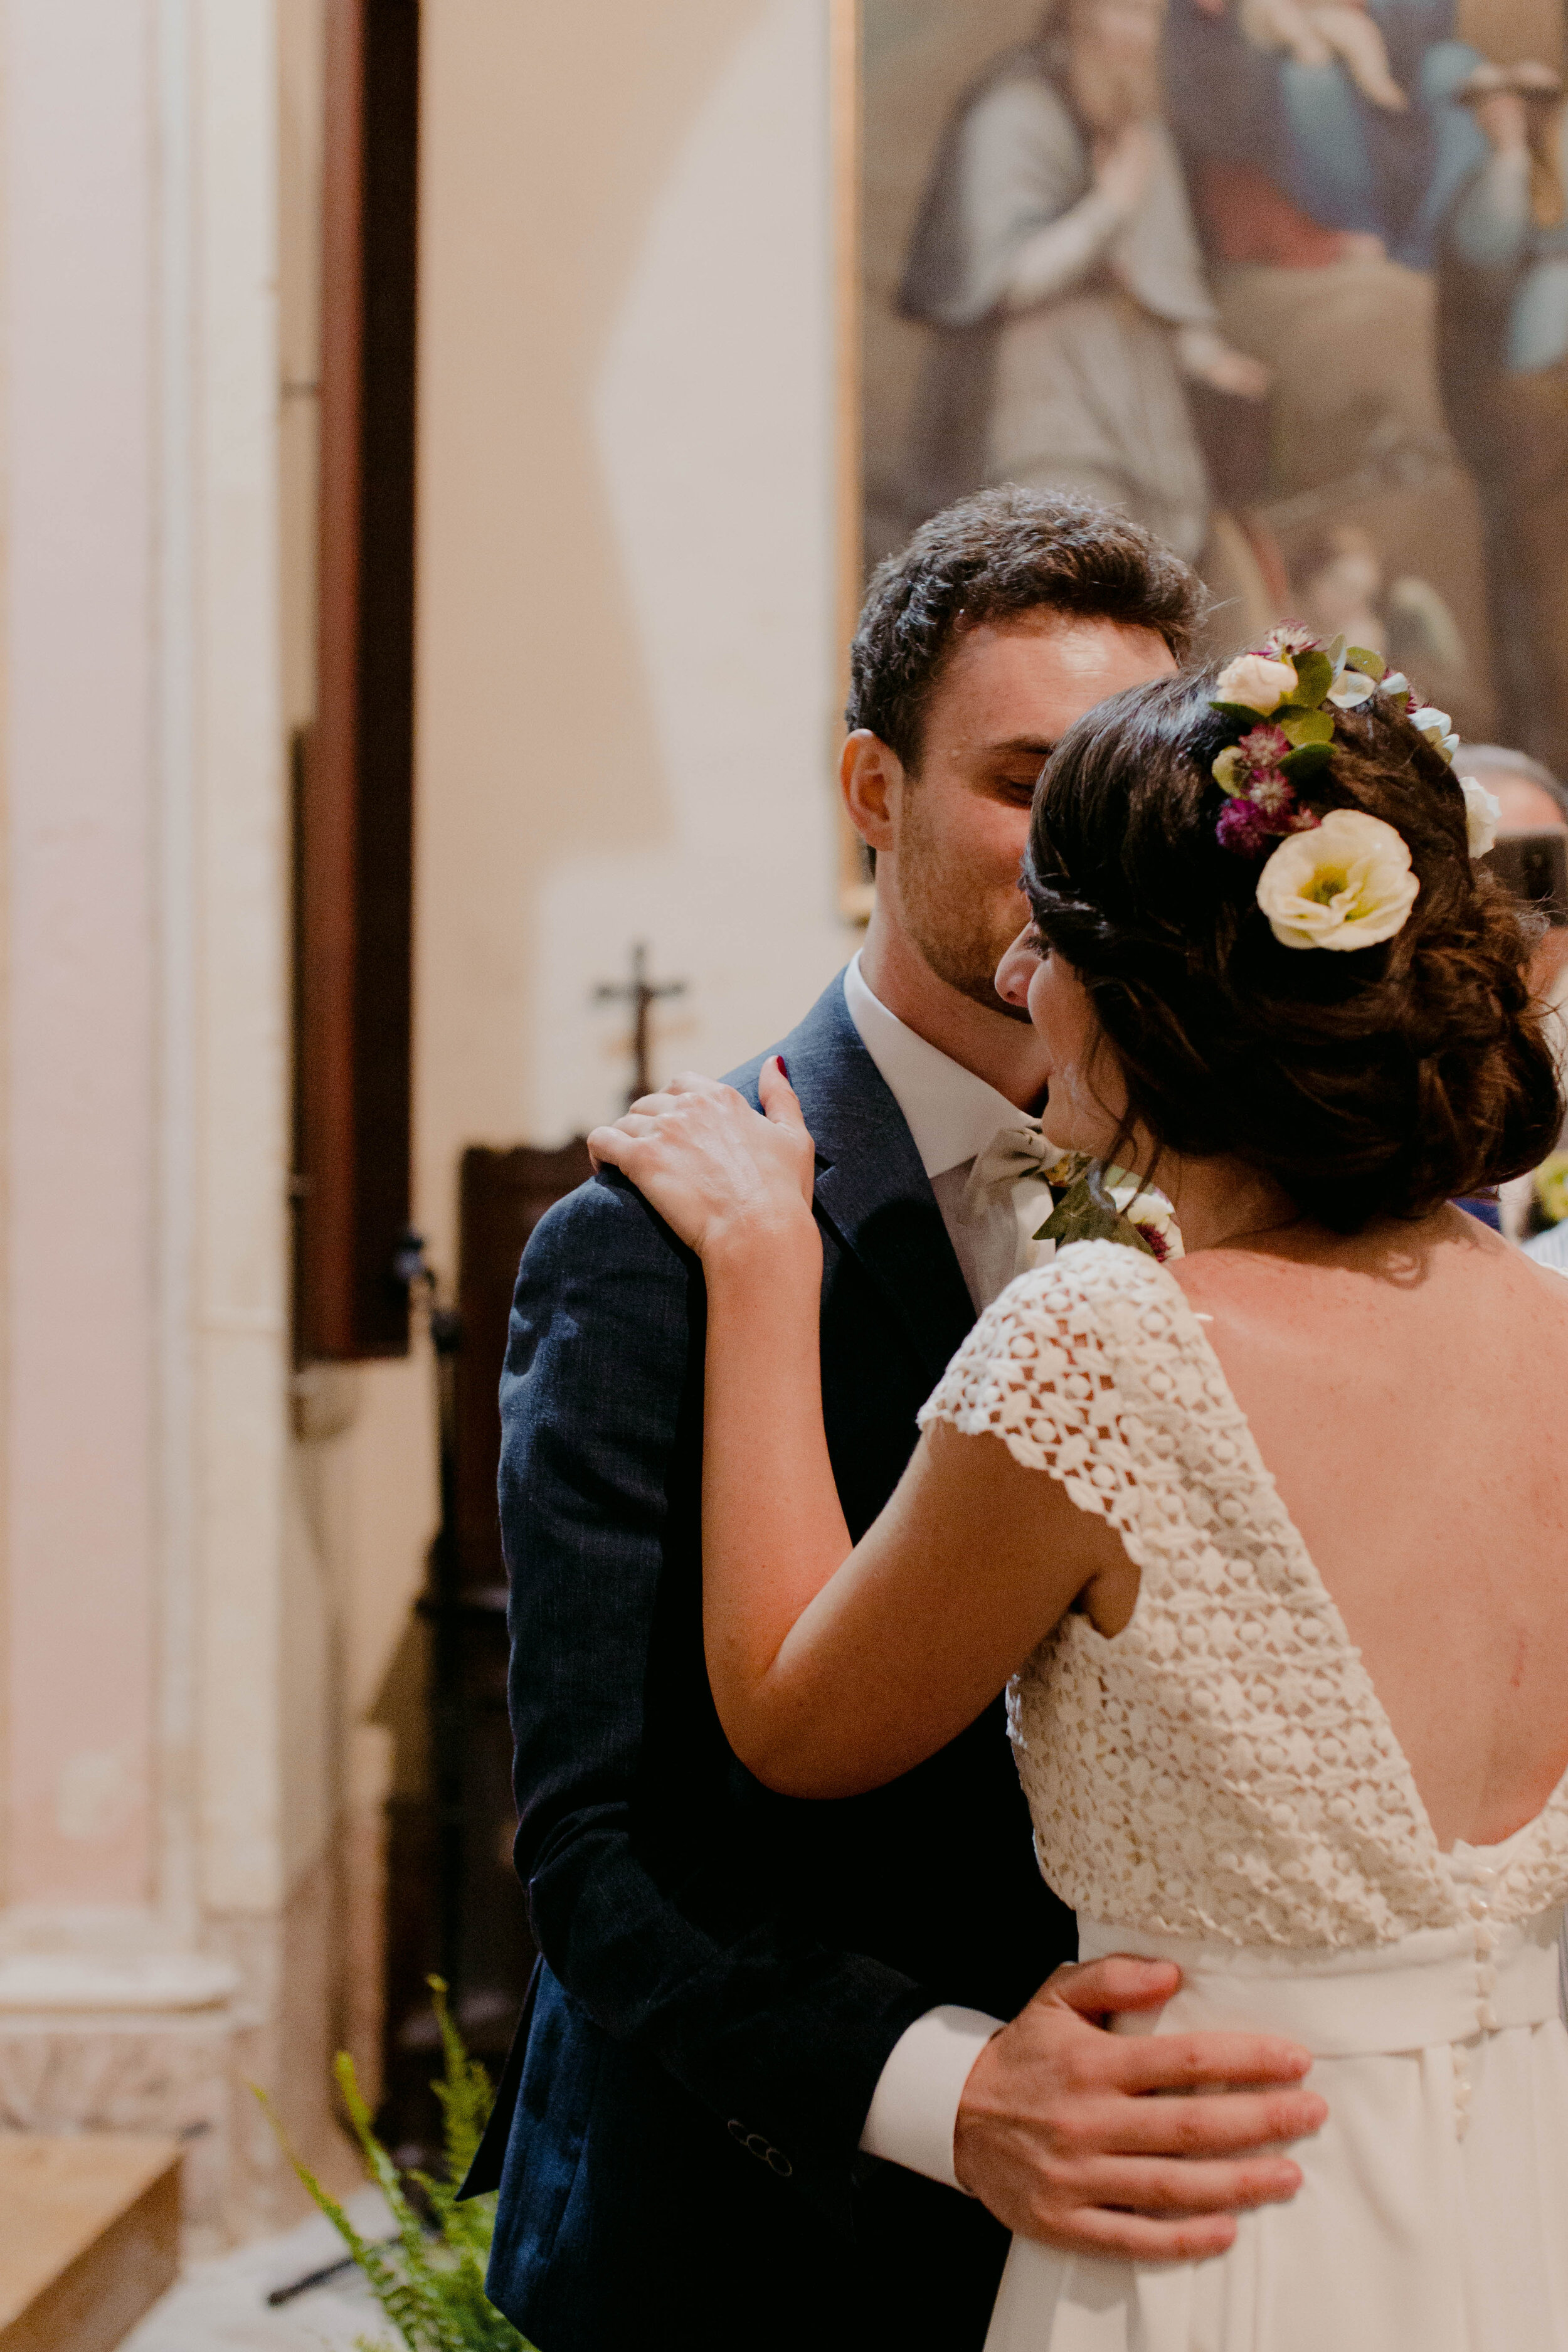 041 - Matrimonio in provincia di Cuneo - Miriam Callegari Fotografa.JPG